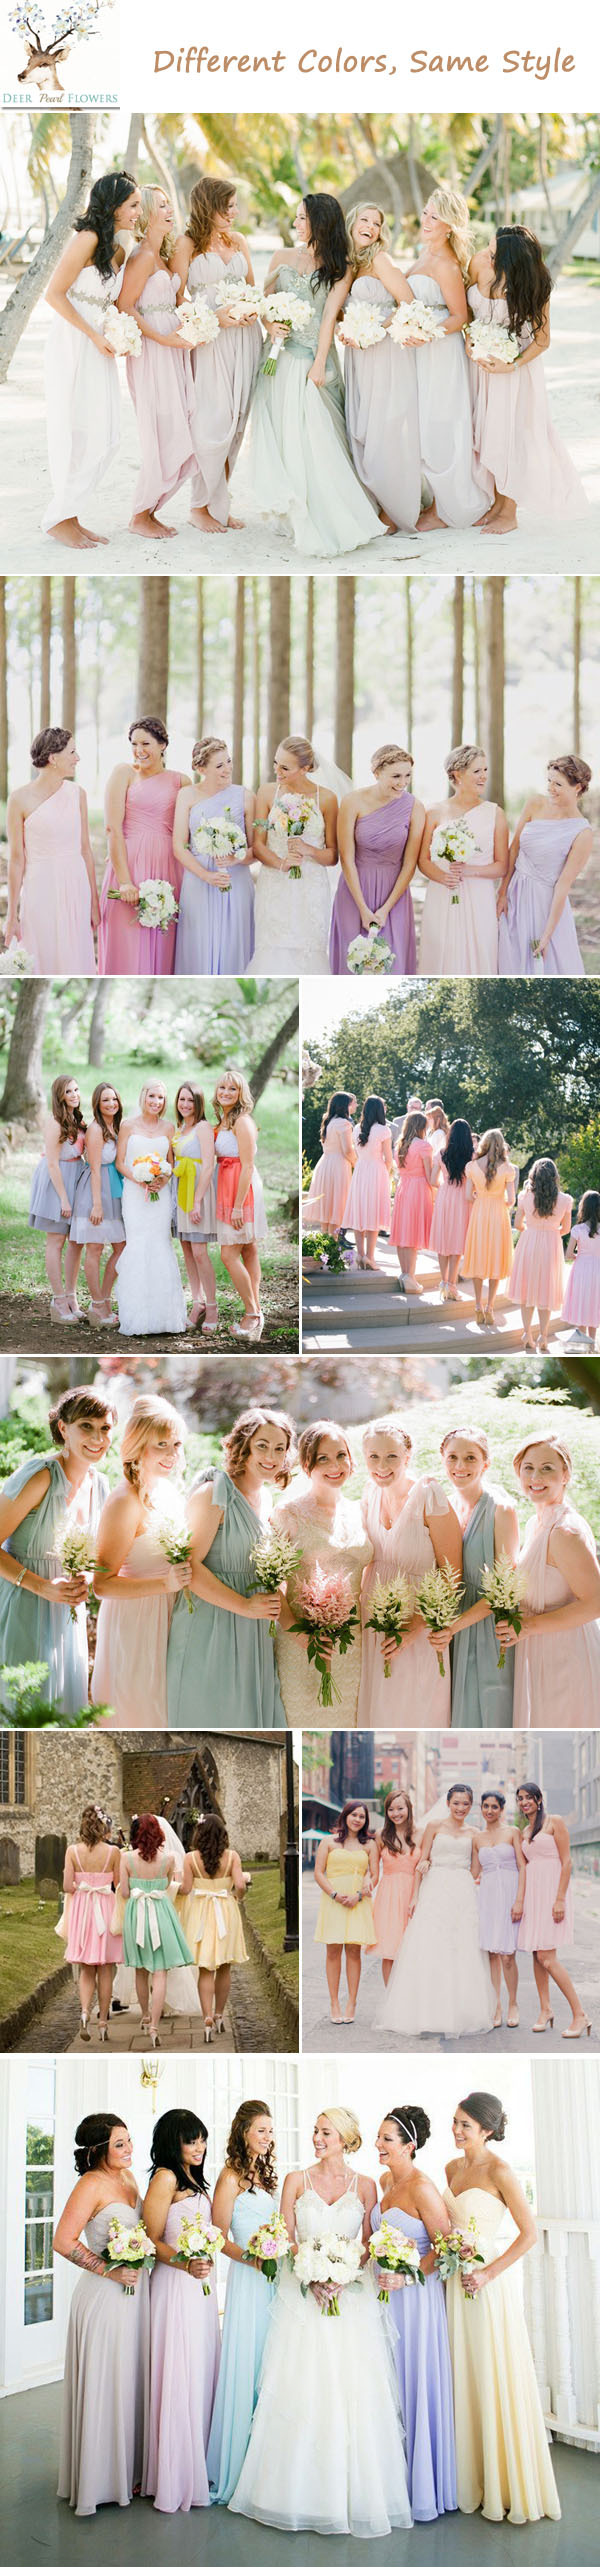 mismatch pastel bridesmaid dresses-same style different colors